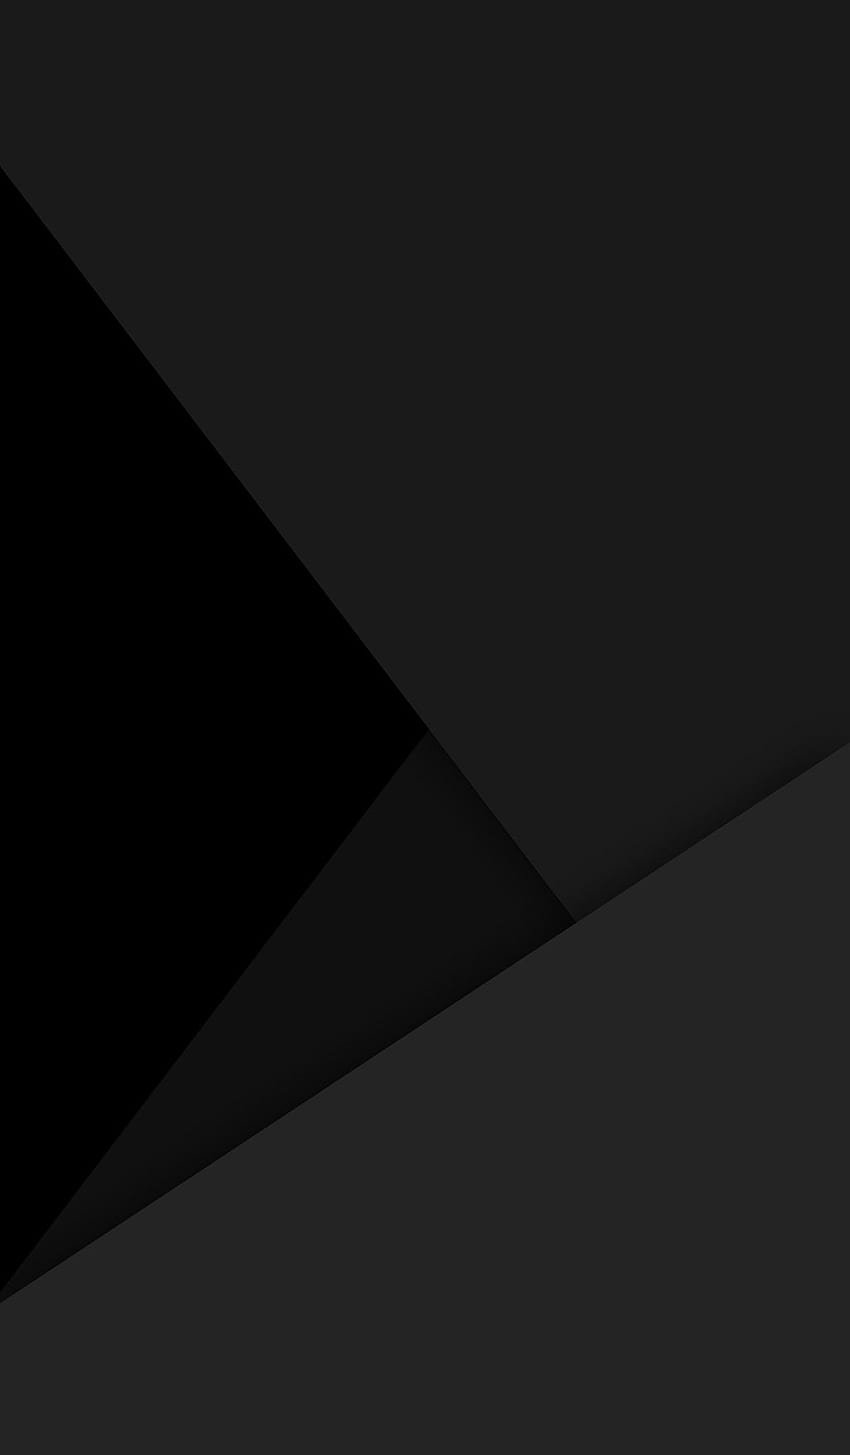 Reines Schwarz, Schwarzes Super AMOLED HD-Handy-Hintergrundbild